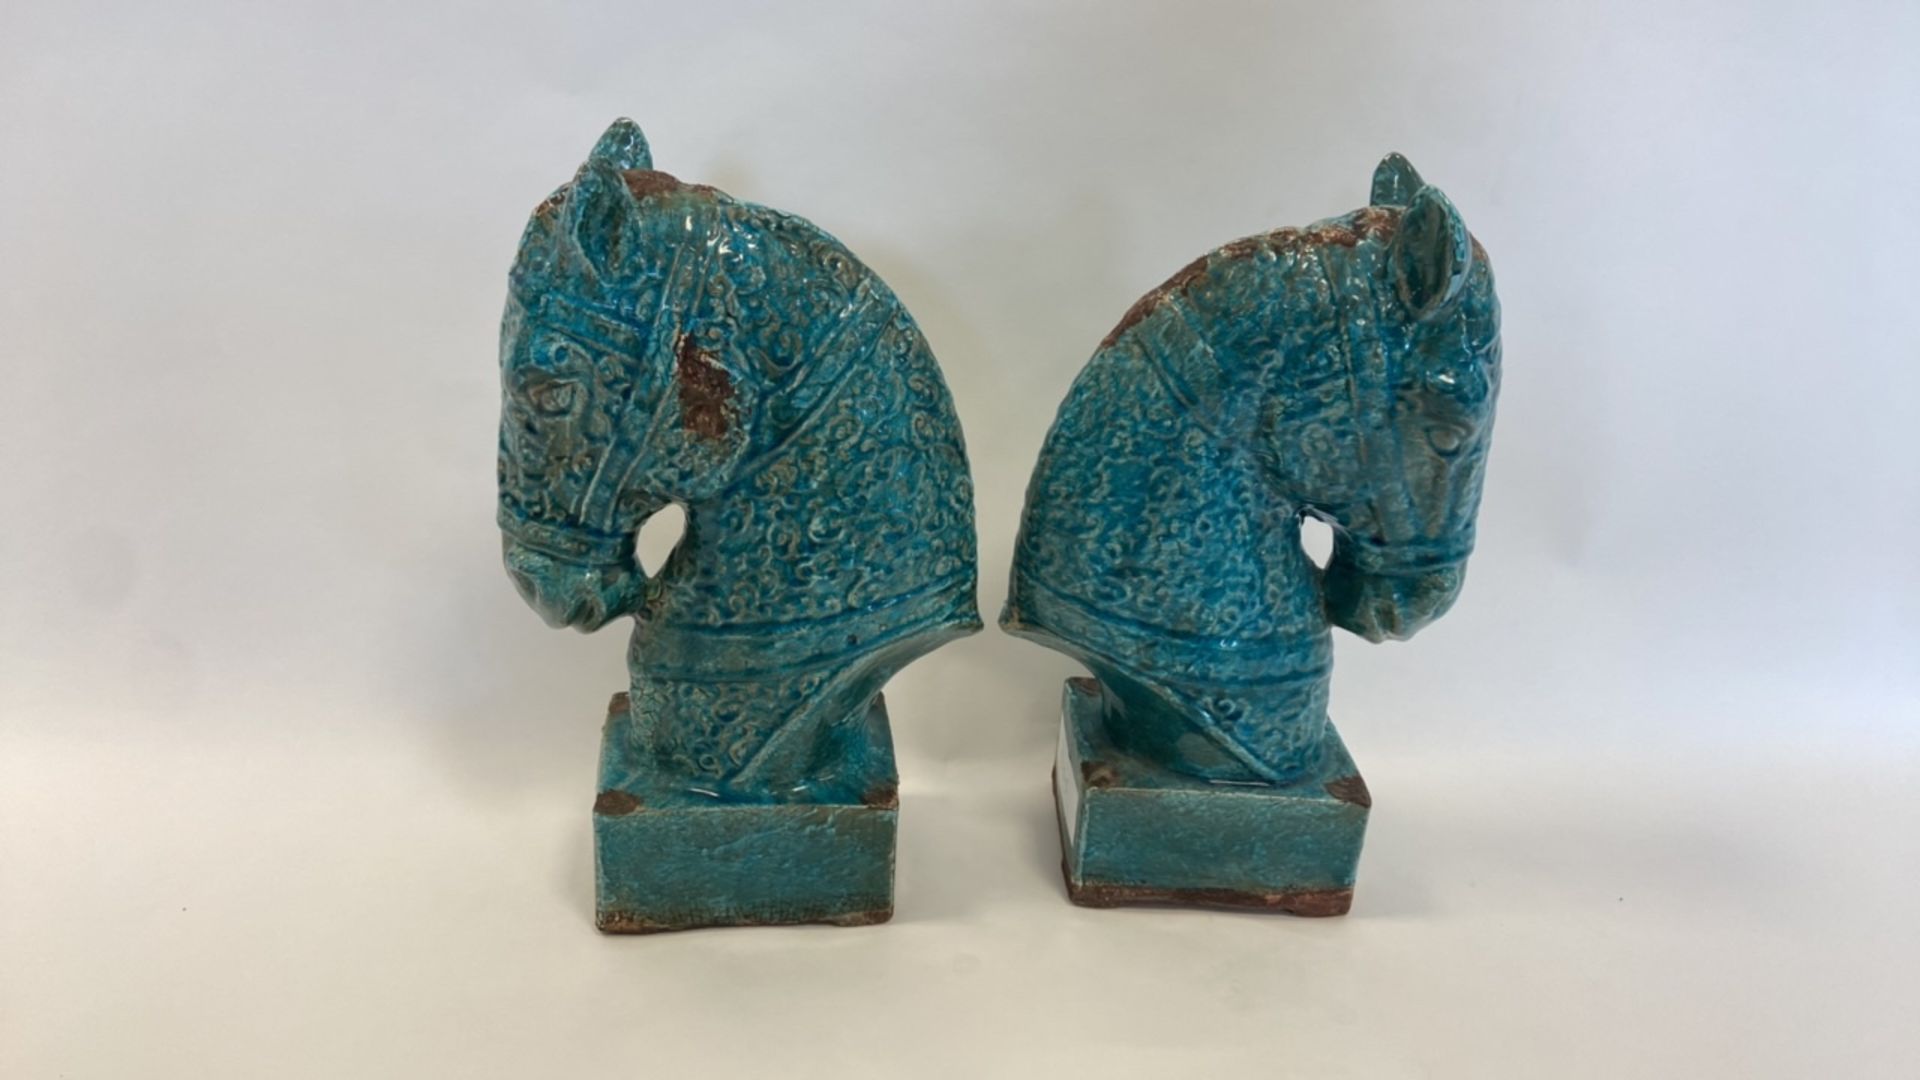 Antique, Handmade Ceramic Horse Statue - Image 8 of 8